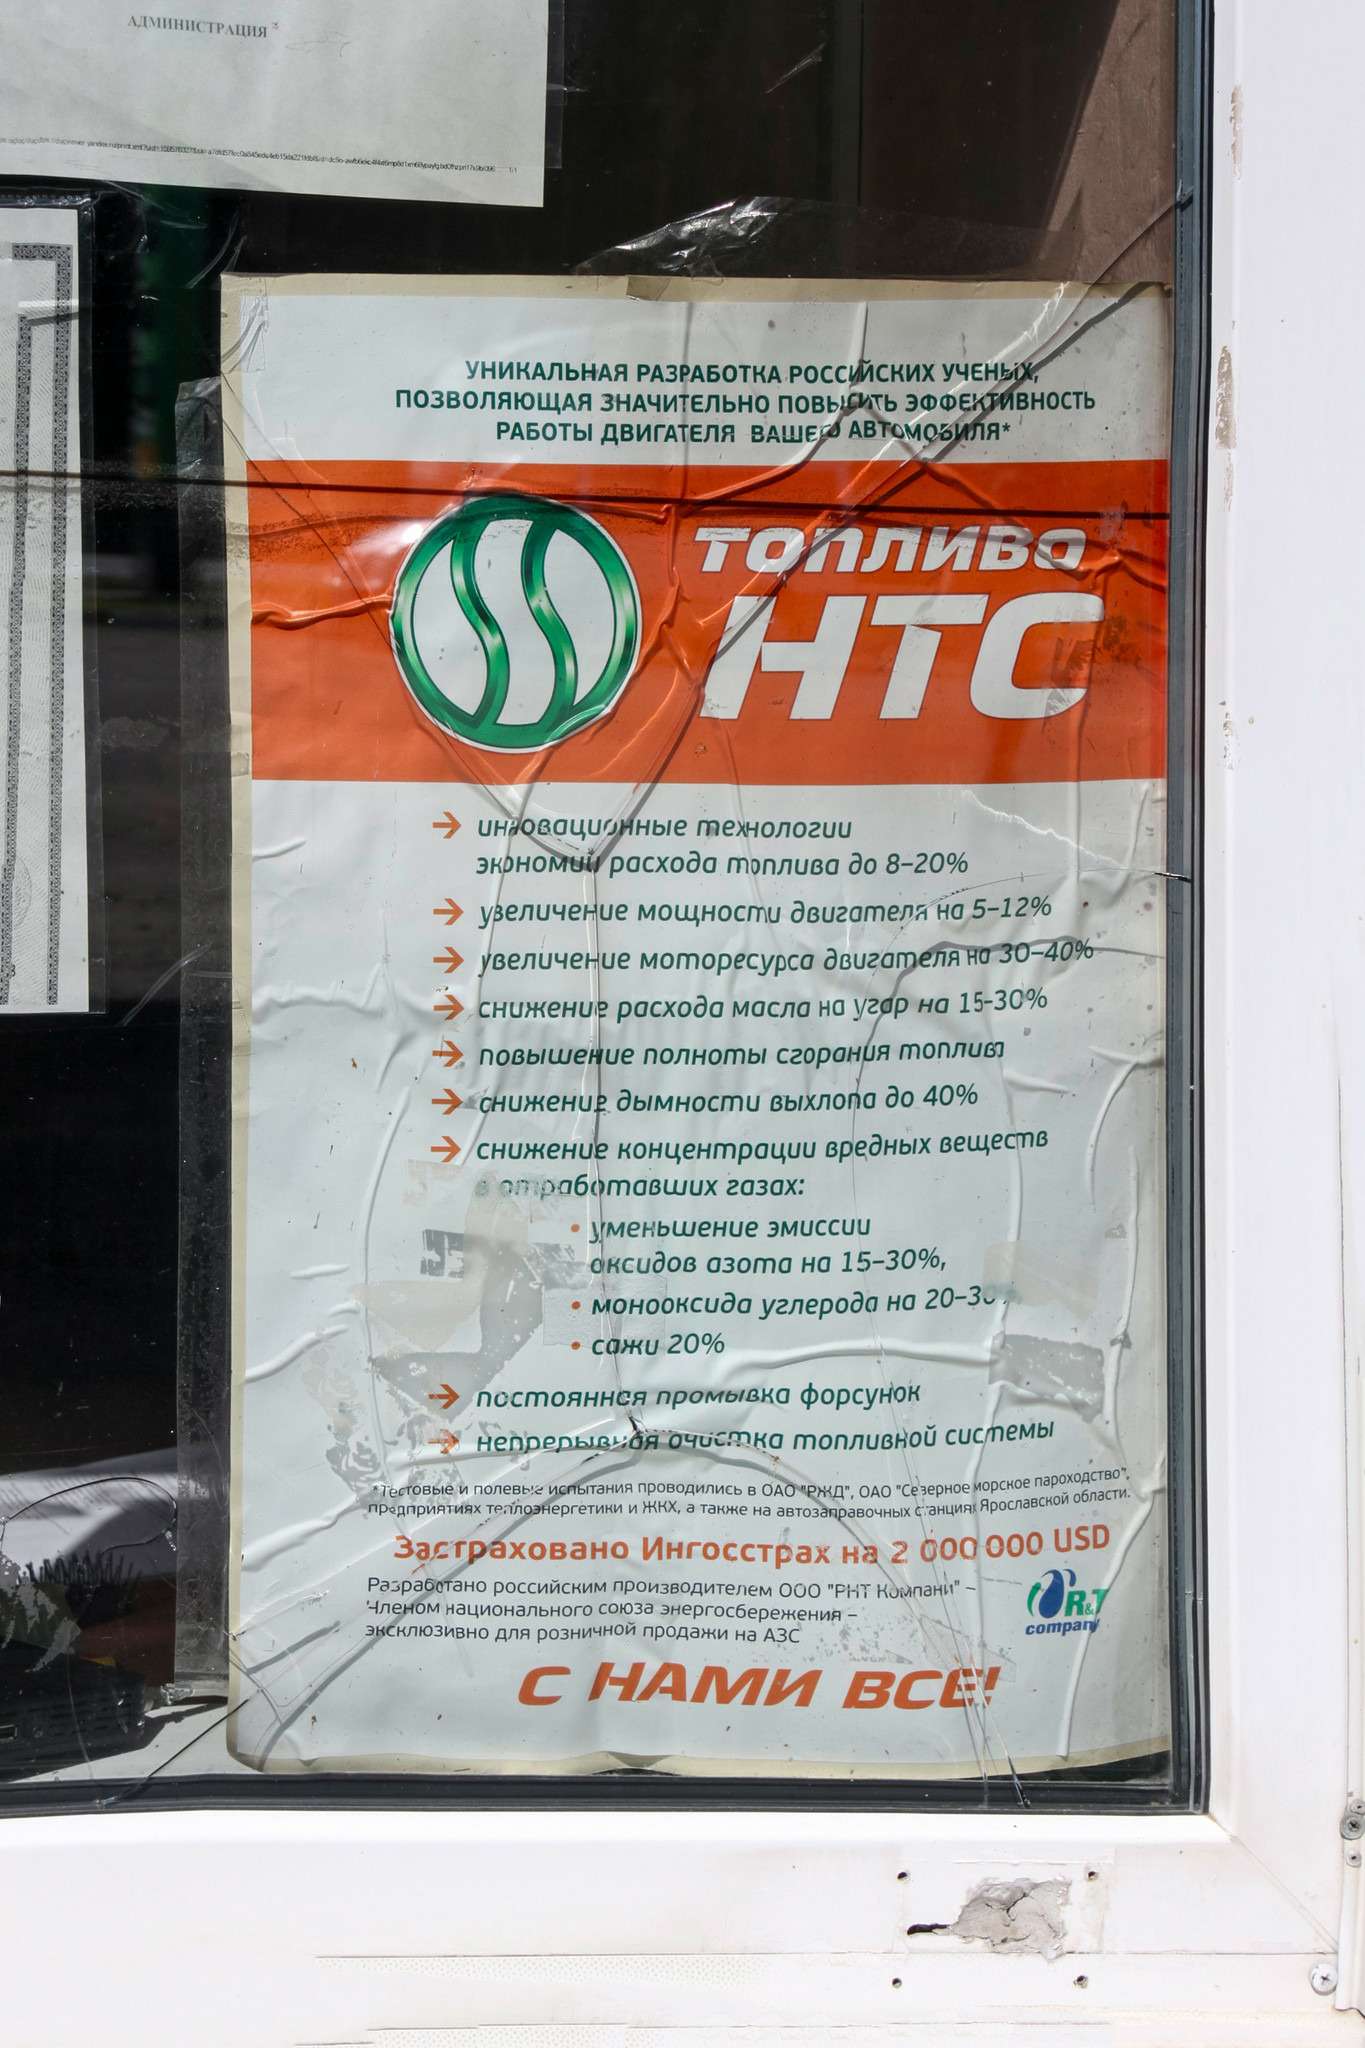 Плакат утверждает, что топливо НТС на этой заправке – уникальная разработка российских ученых: увеличивает мощность двигателя, снижает расход масла на угар и дымность выхлопа.